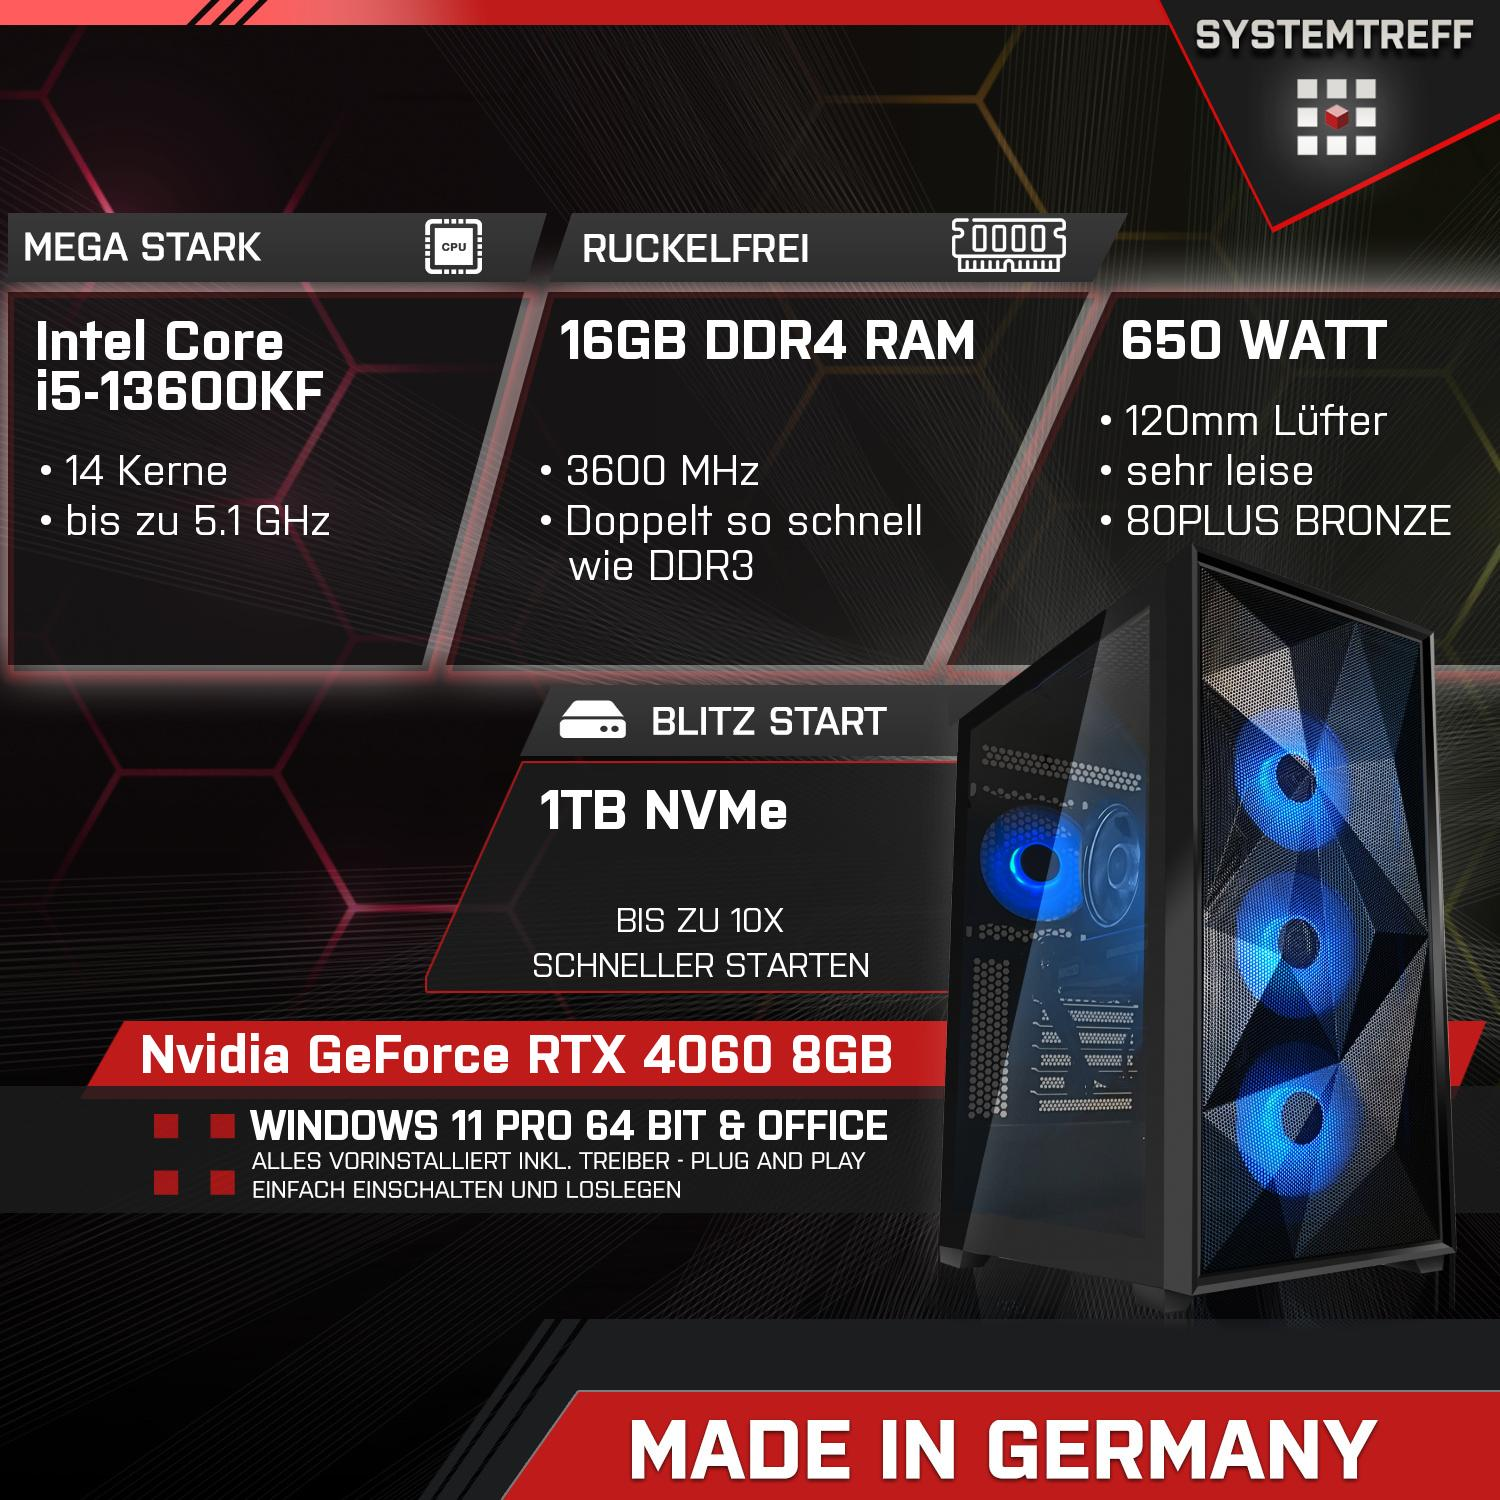 GDDR6 mSSD, 8GB RAM, Komplett GB 1000 Prozessor, mit GB Intel 4060 i5-13600KF GB Komplett GeForce Core RTX 3, DLSS Nvidia i5-13600KF, SYSTEMTREFF Gaming 8 PC mit 16